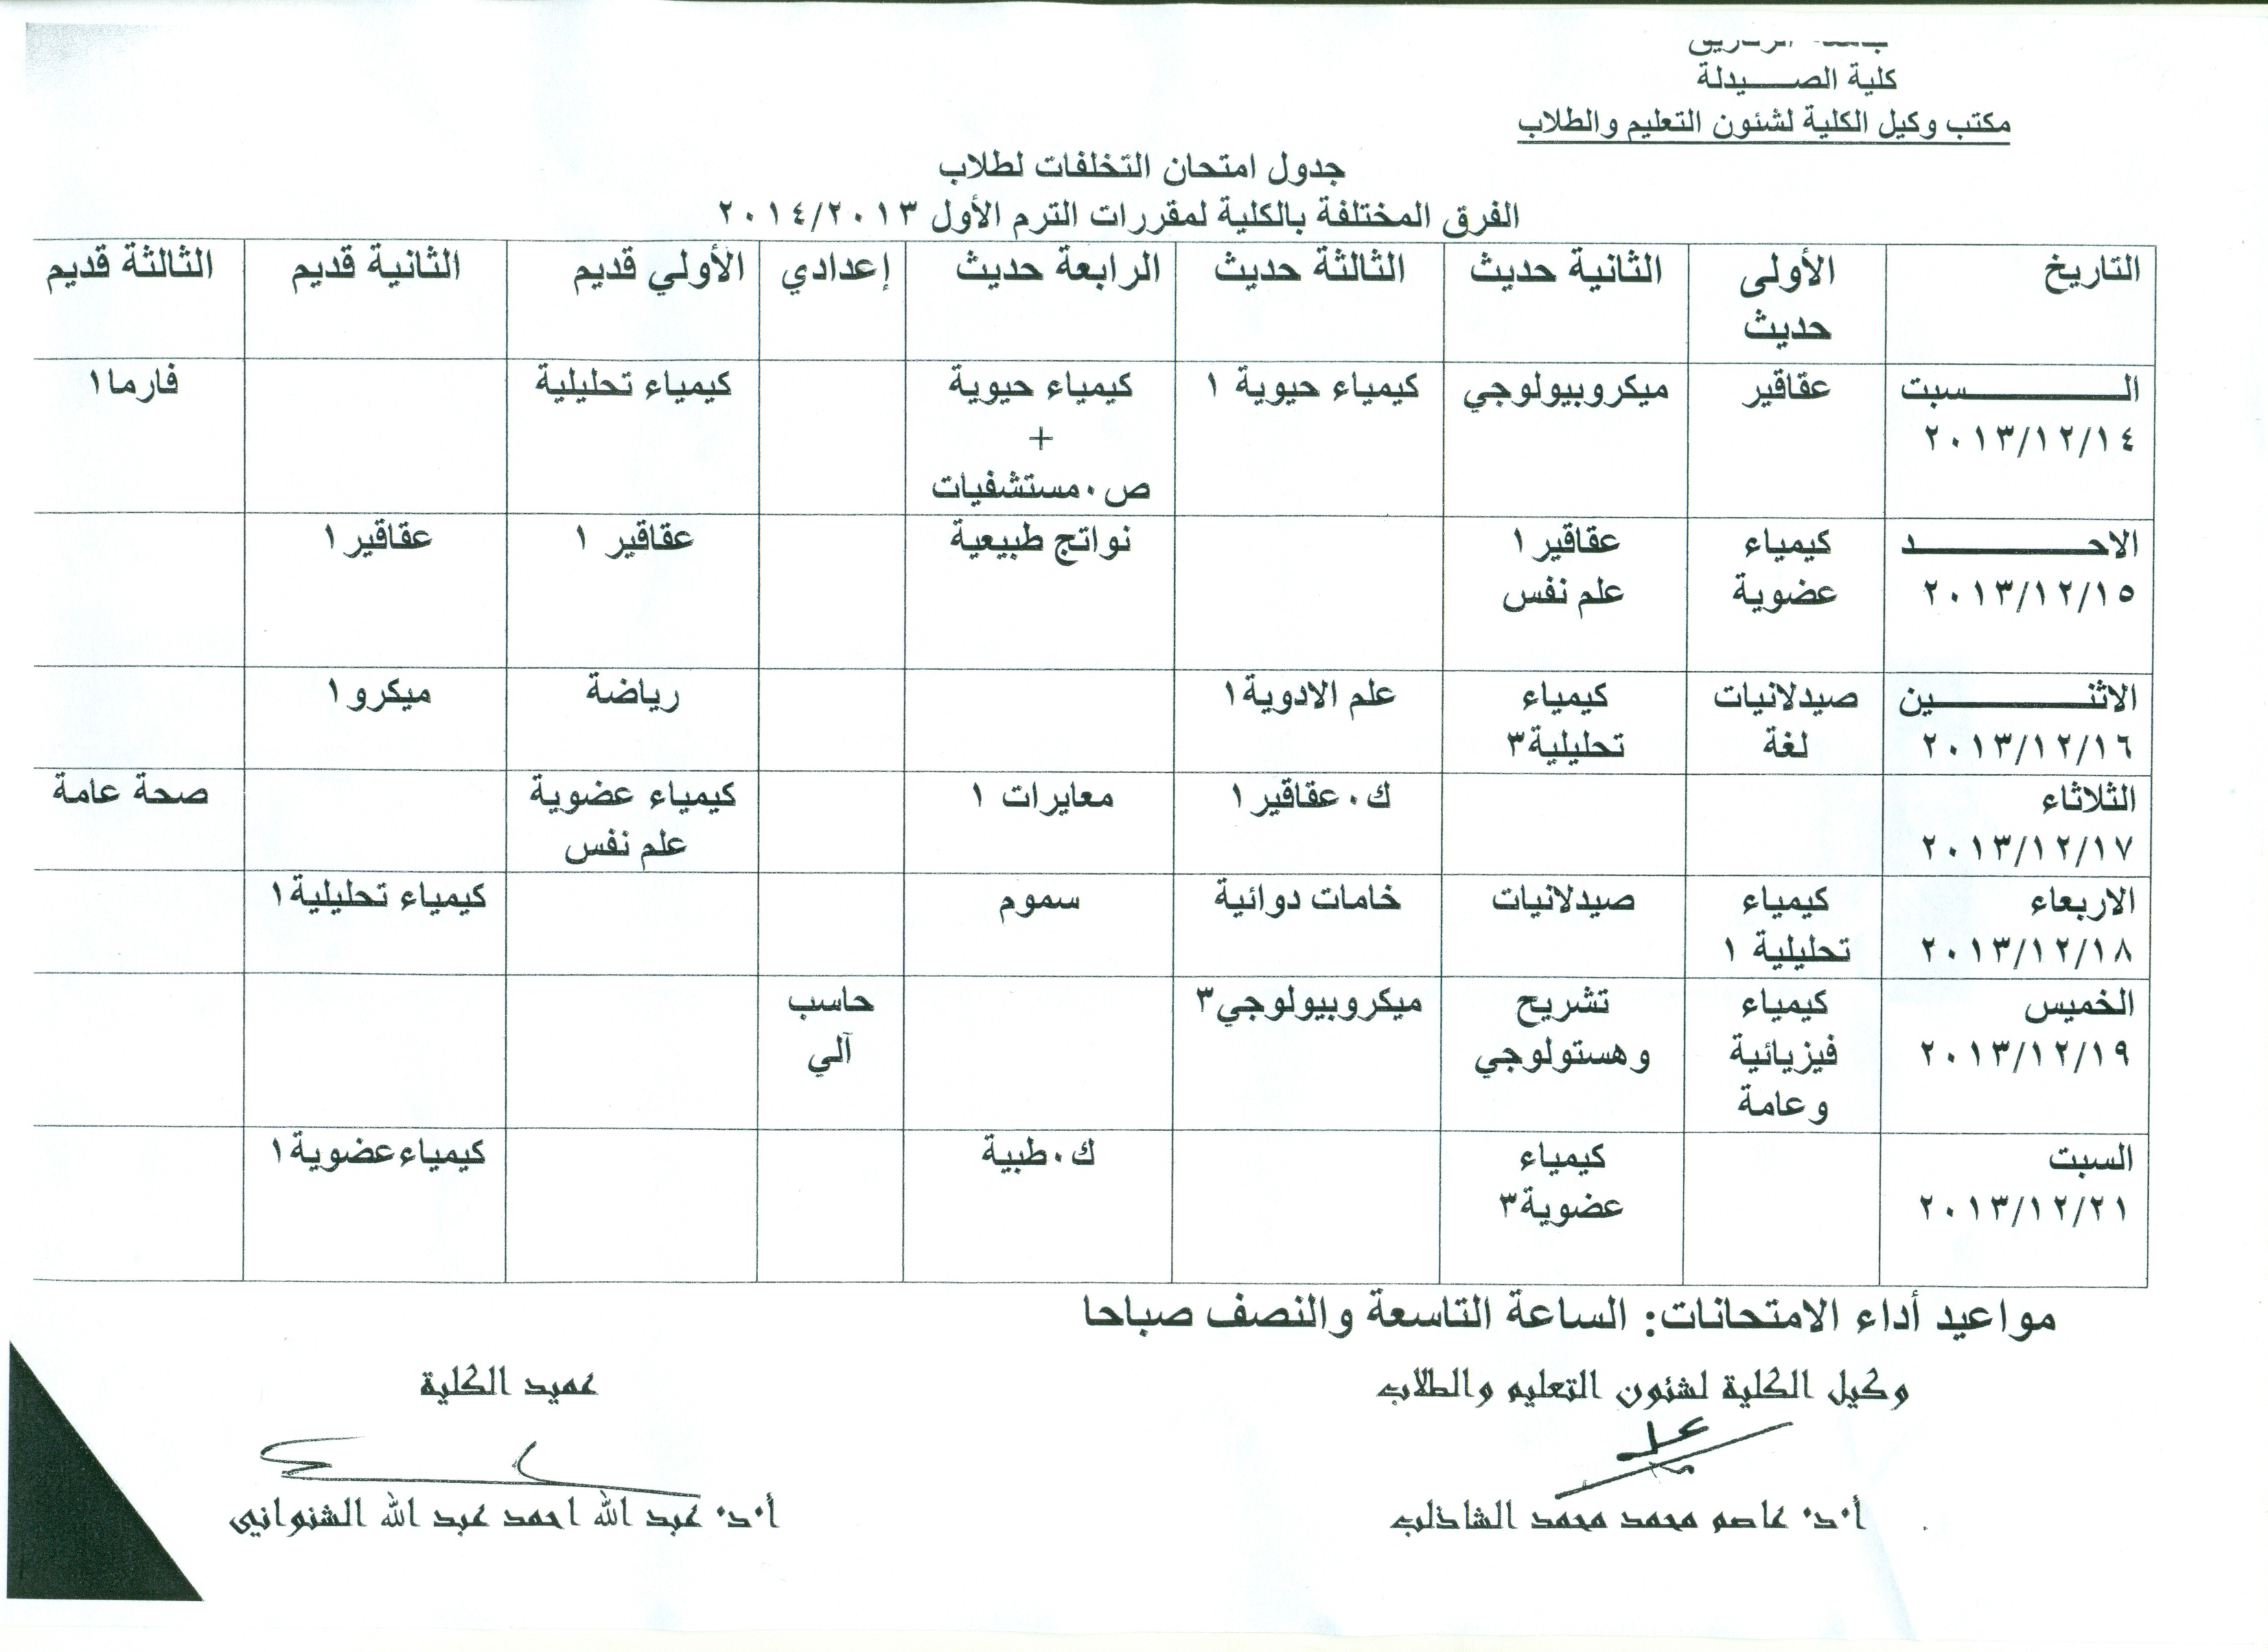 جدول إمتحان التخلفات لطلاب الفرق المختلفة بالكلية لمقررات الترم الأول 2013/2014